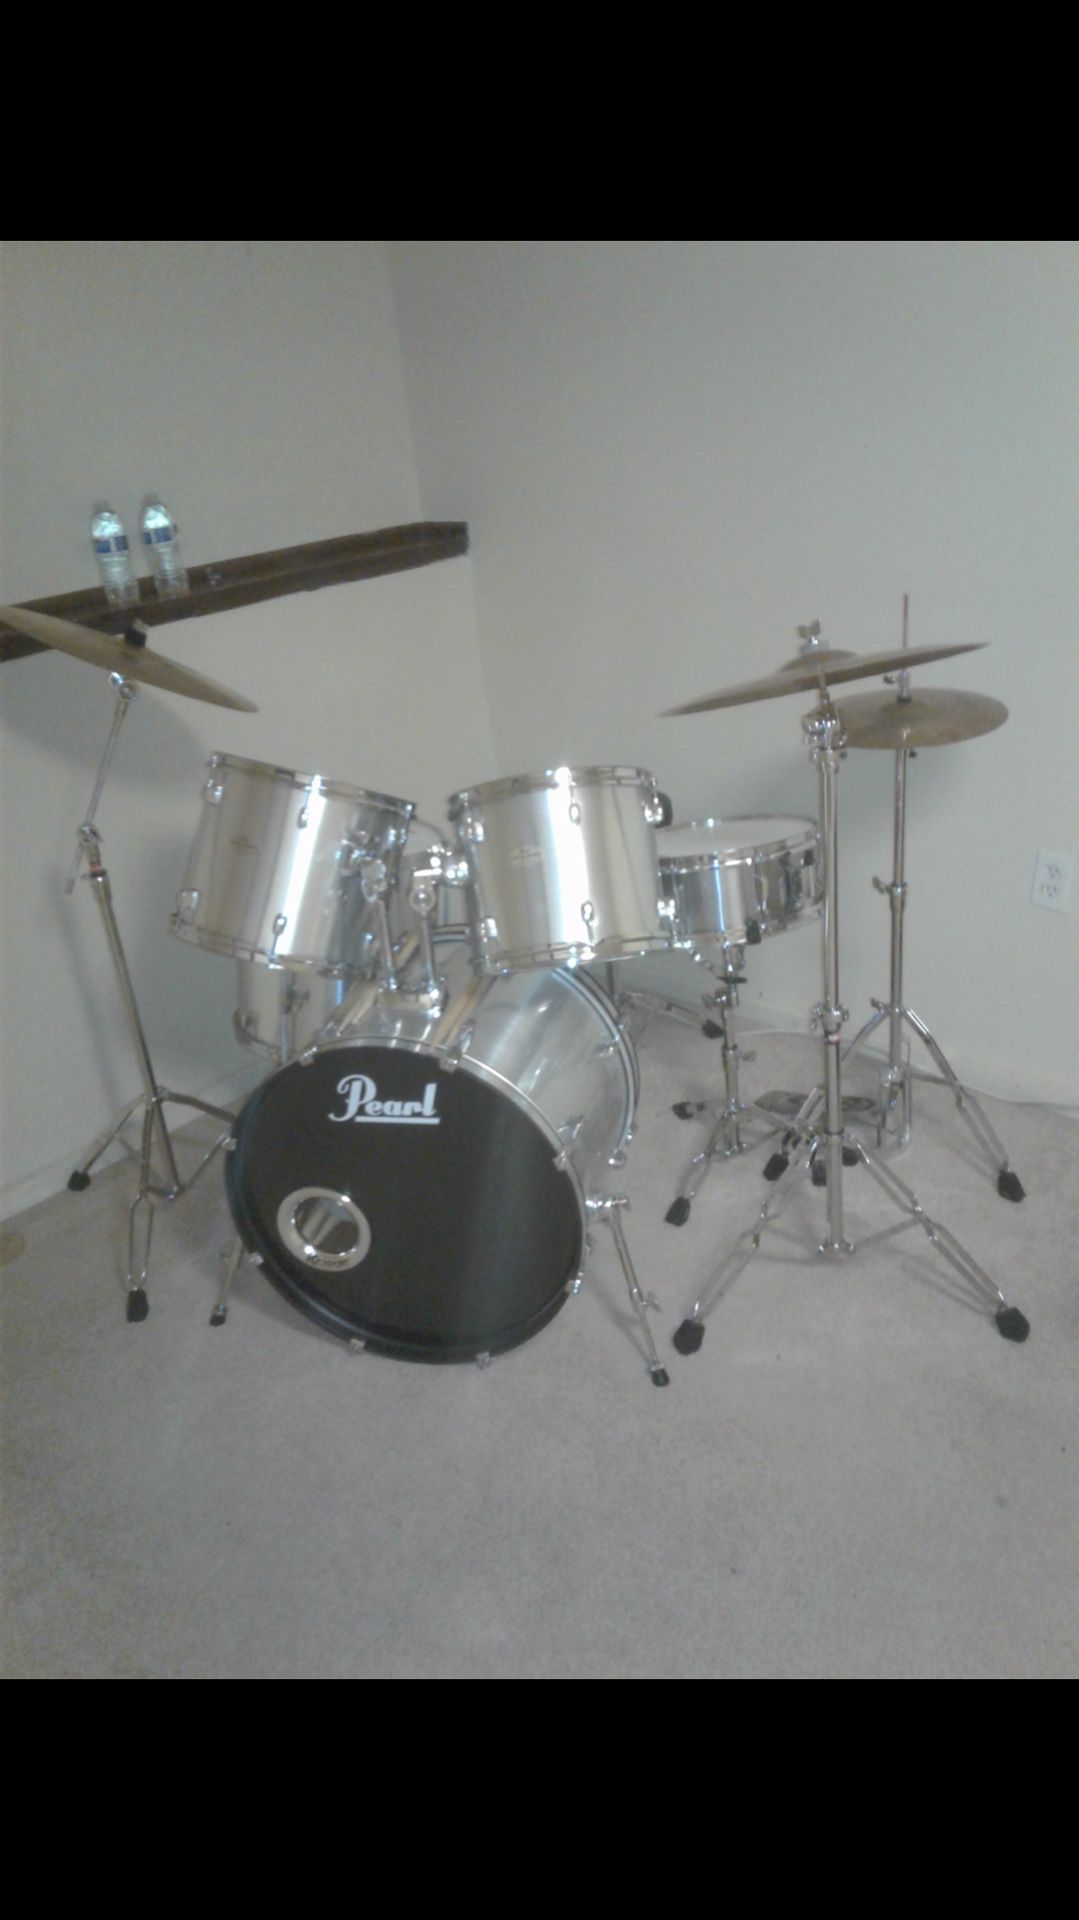 Drums peard